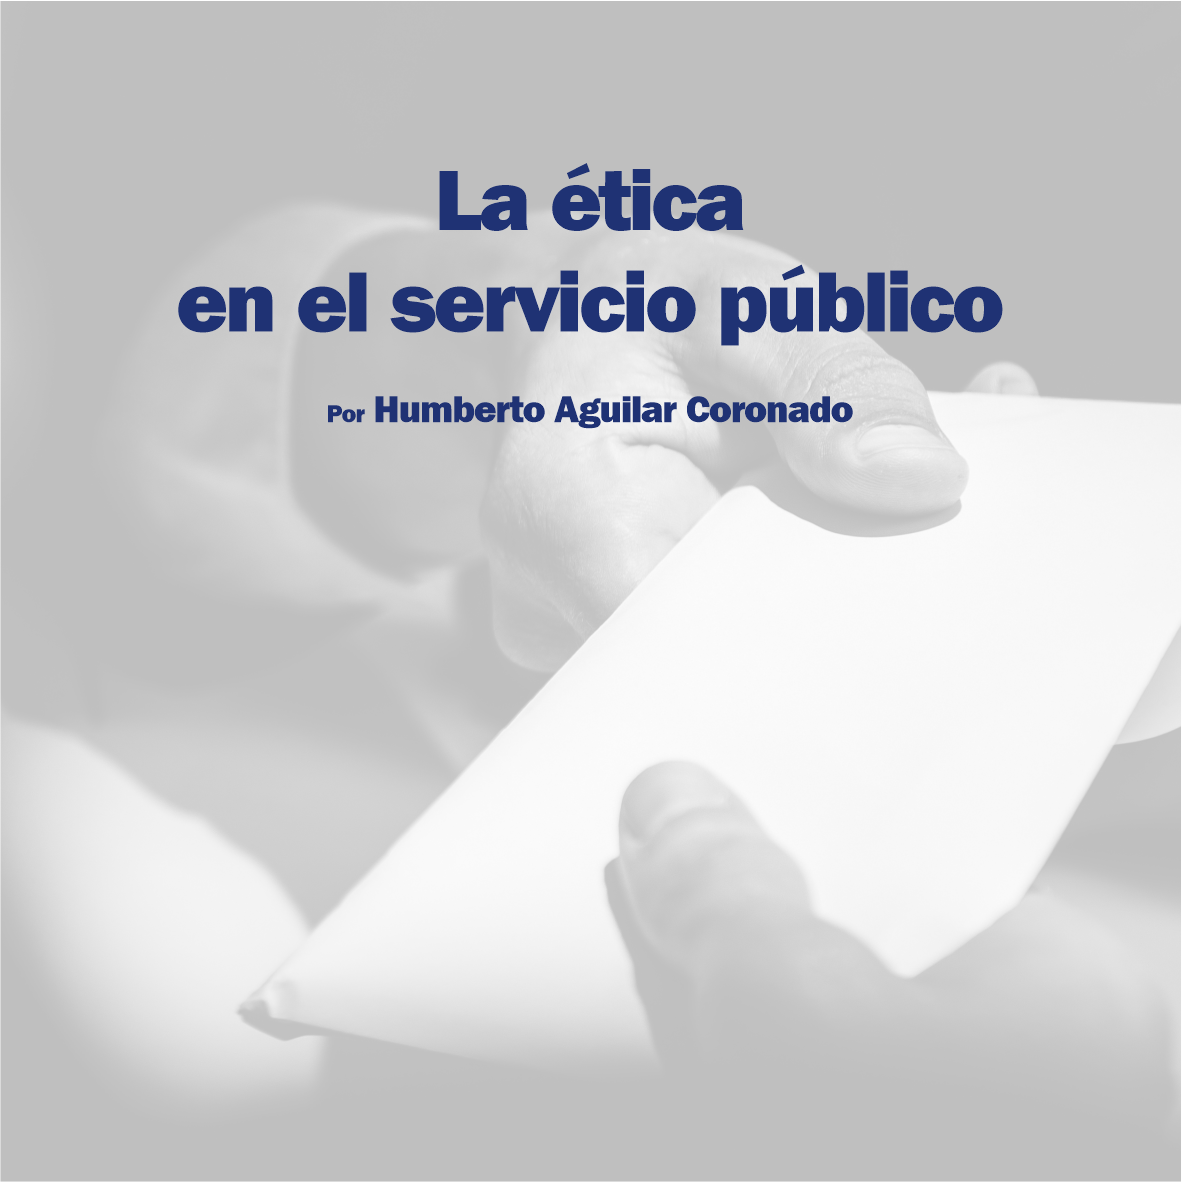 La ética en el servicio público